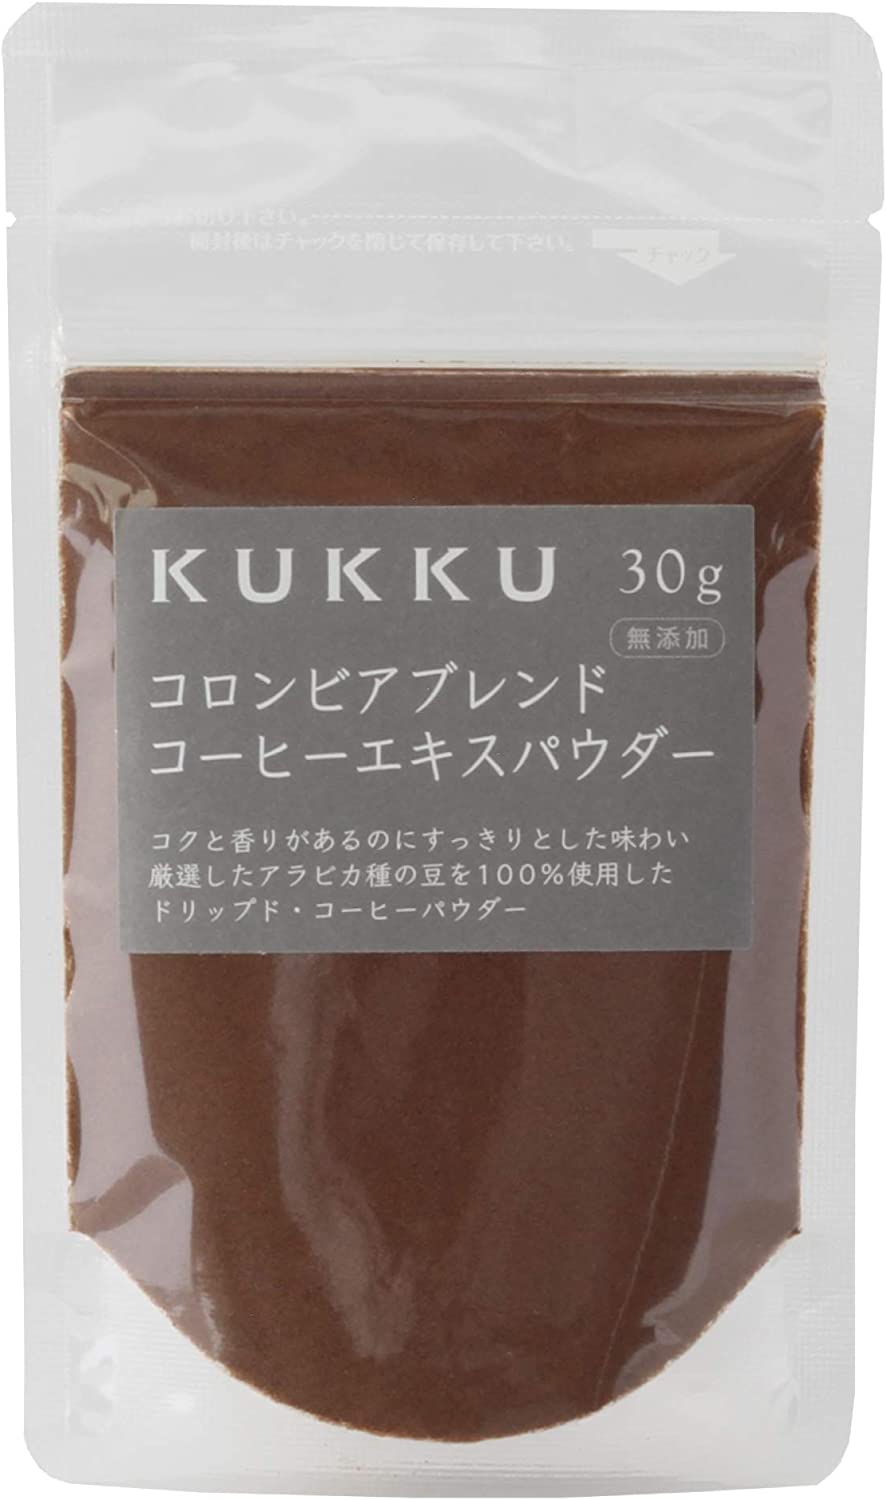 KUKKU Columbia Blend Coffee Extract Powder 30g Additive-Free Coffee Powder